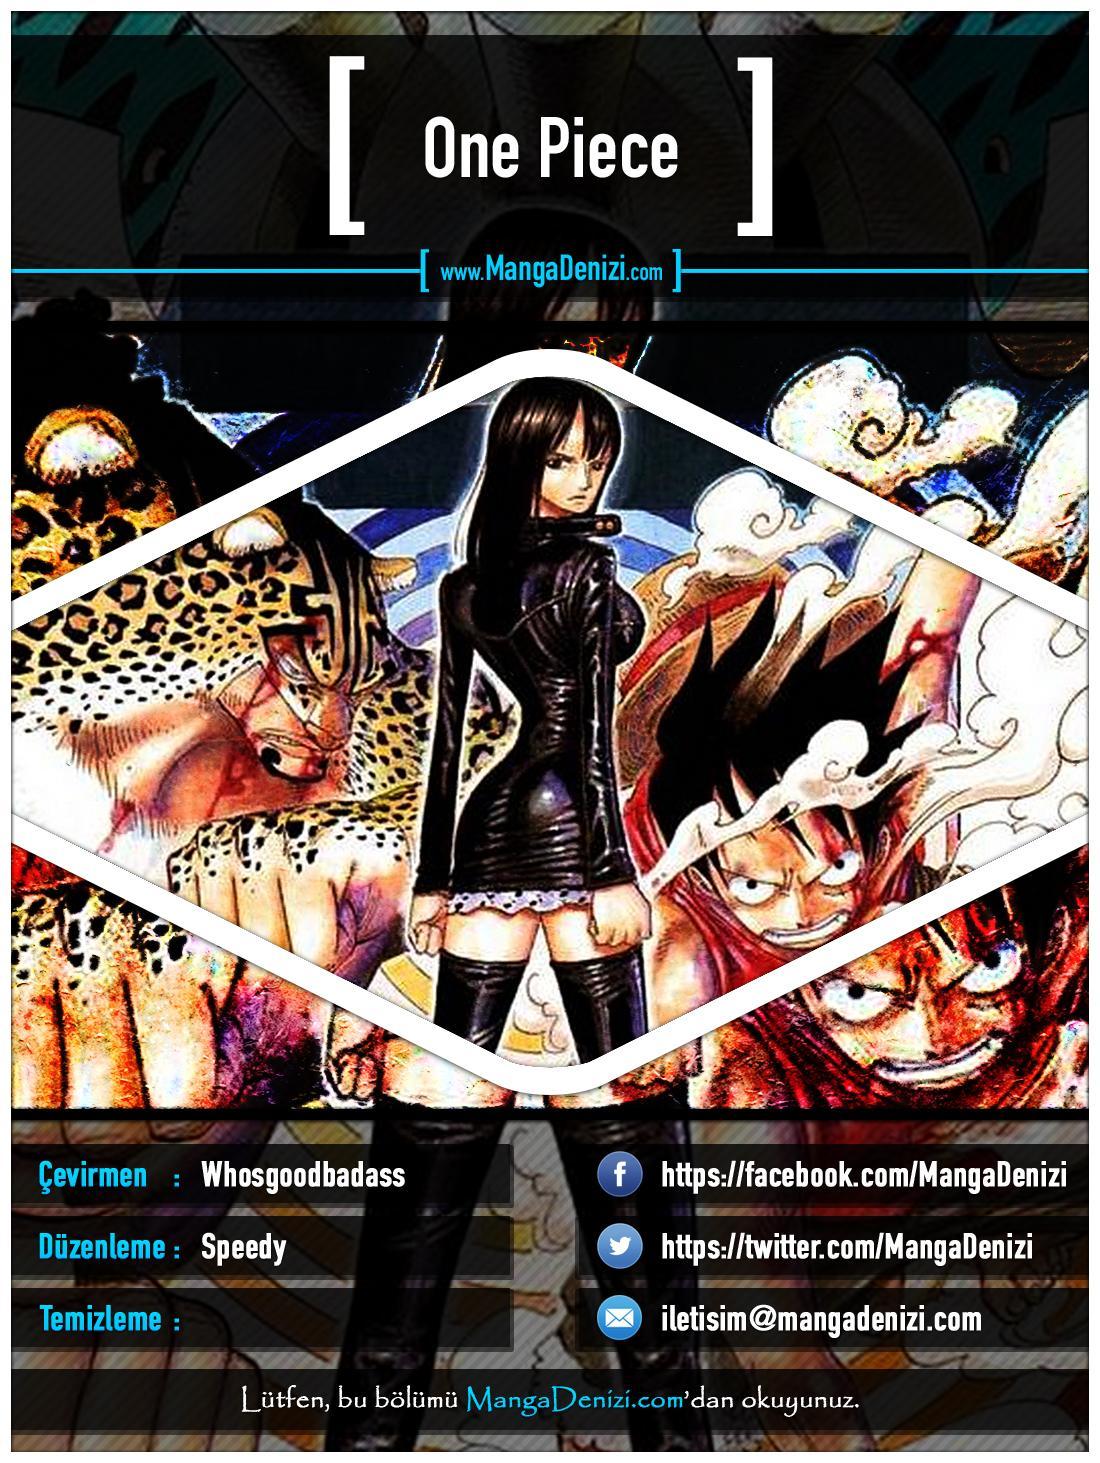 One Piece [Renkli] mangasının 0319 bölümünün 1. sayfasını okuyorsunuz.